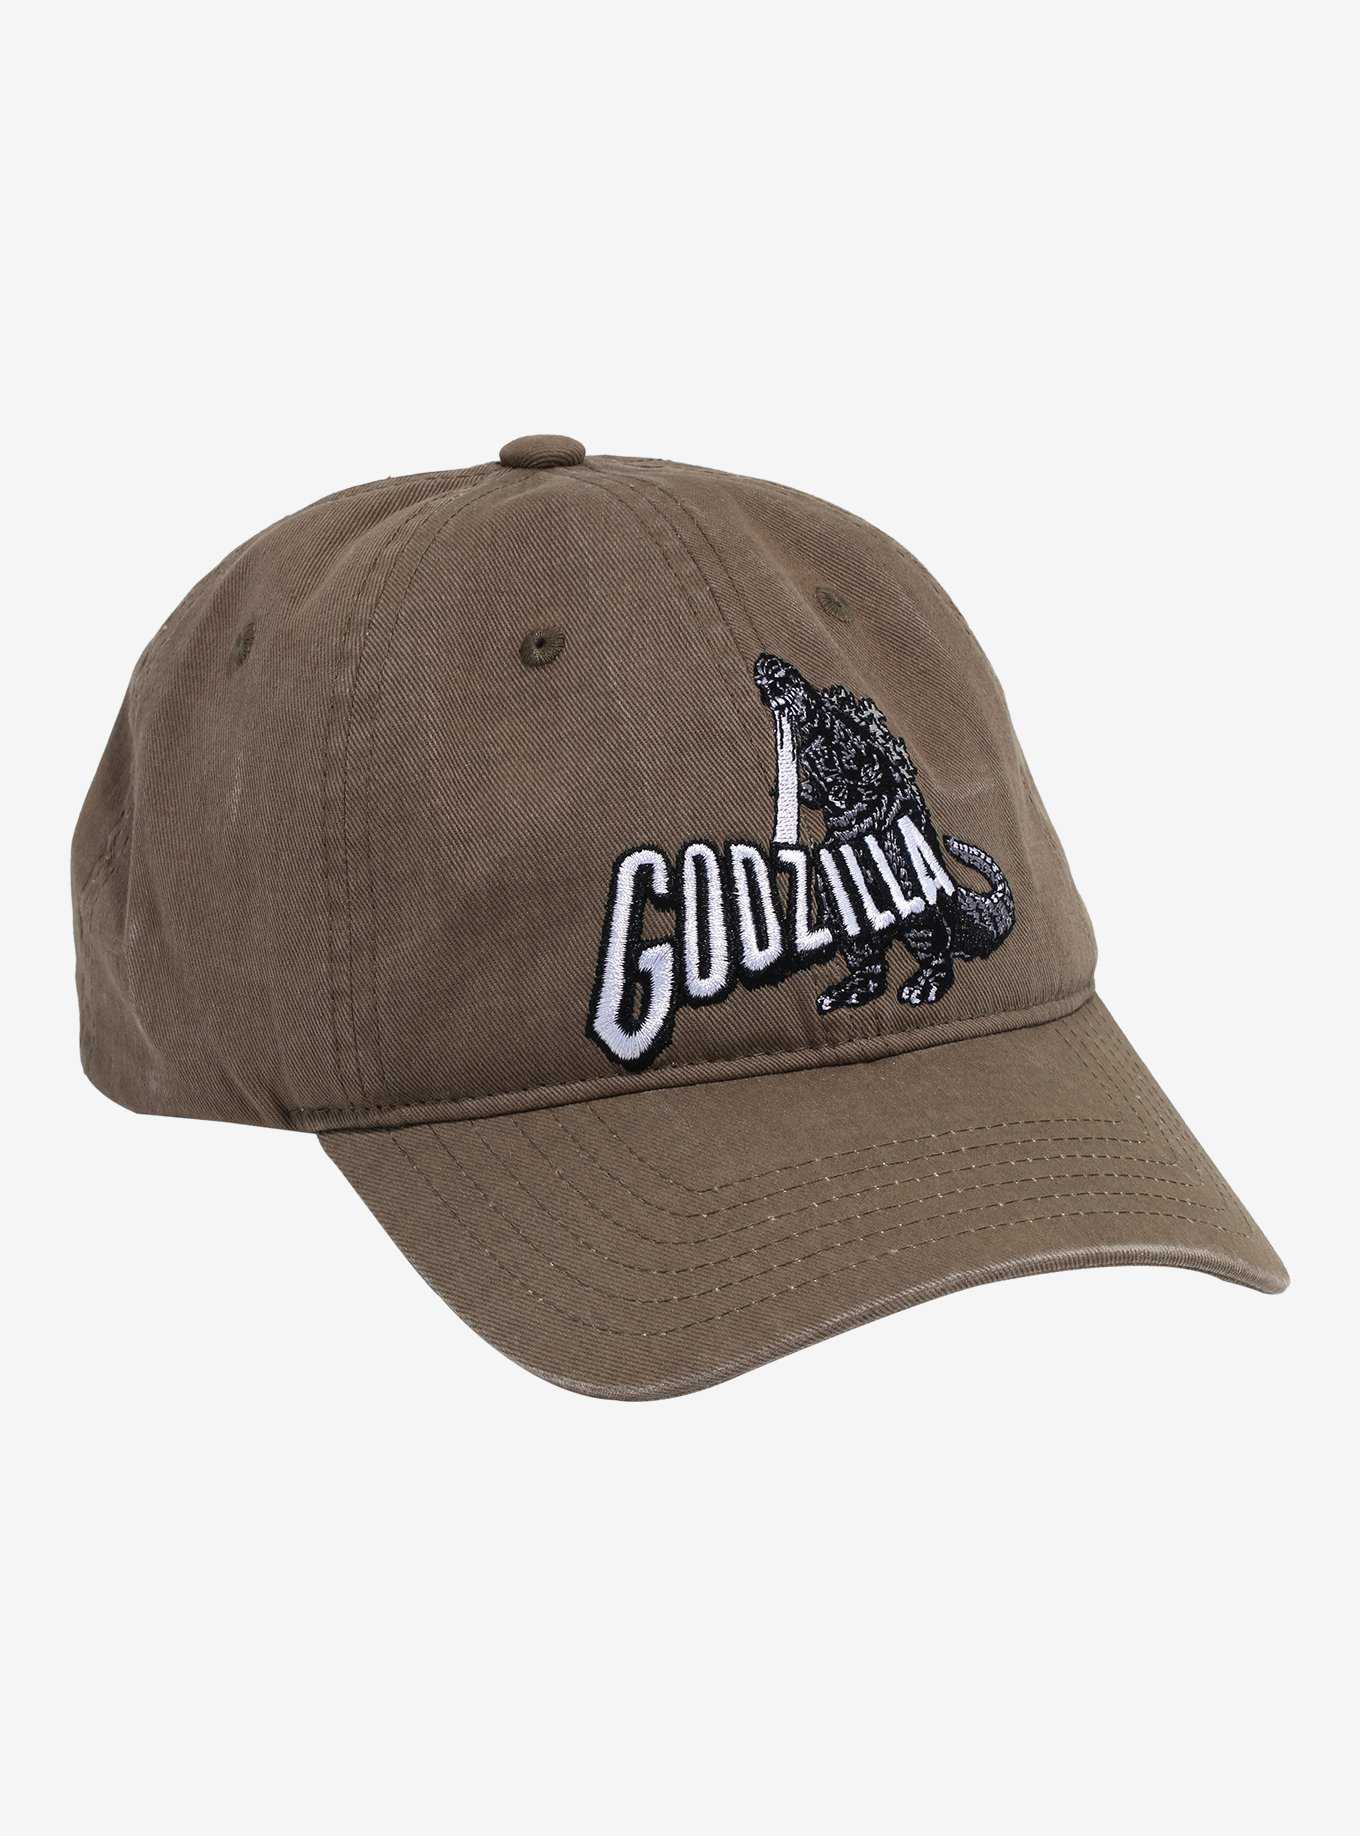 Cool Baseball Hats, Trucker Hats & Baseball Caps